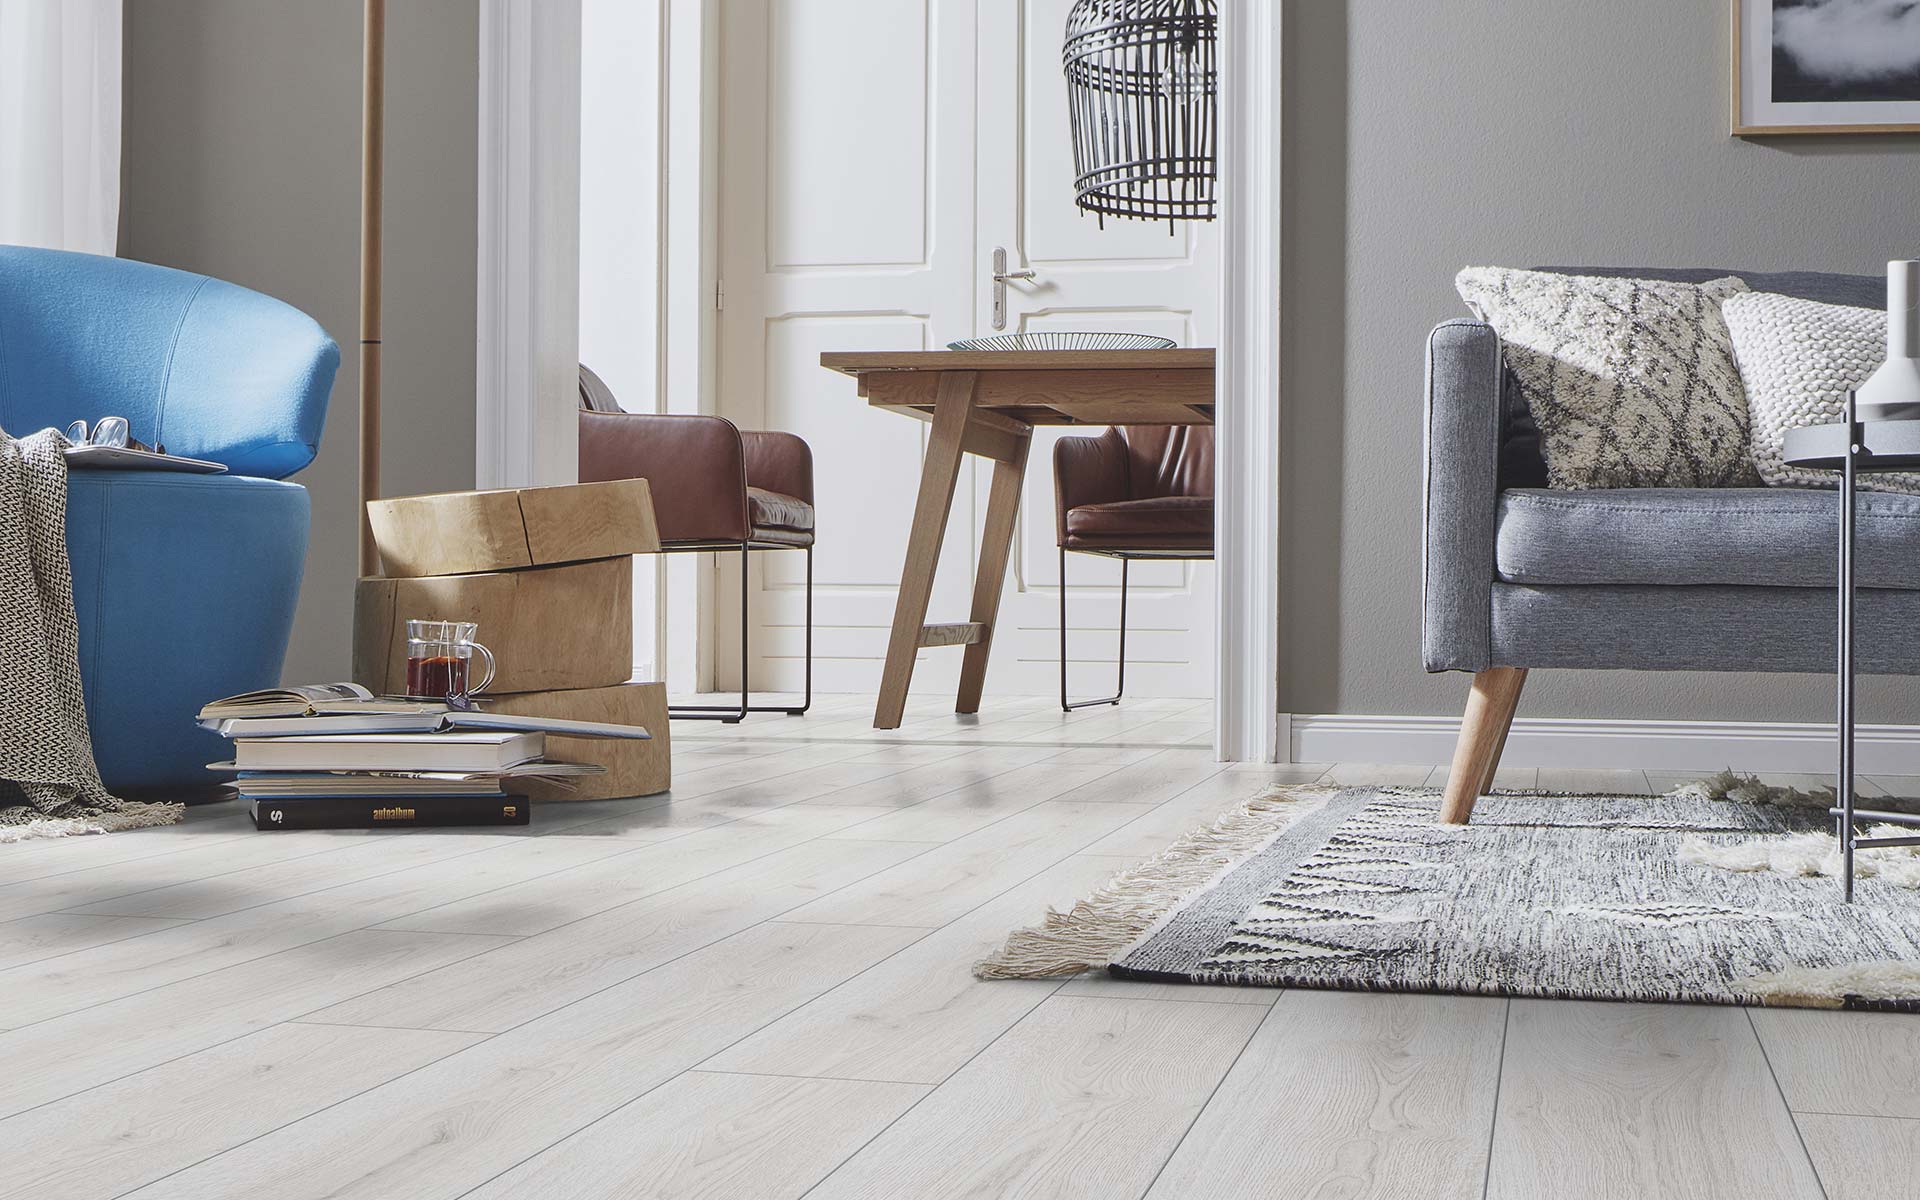 KRONOTEX Exquisit Living Room Laminate Flooring